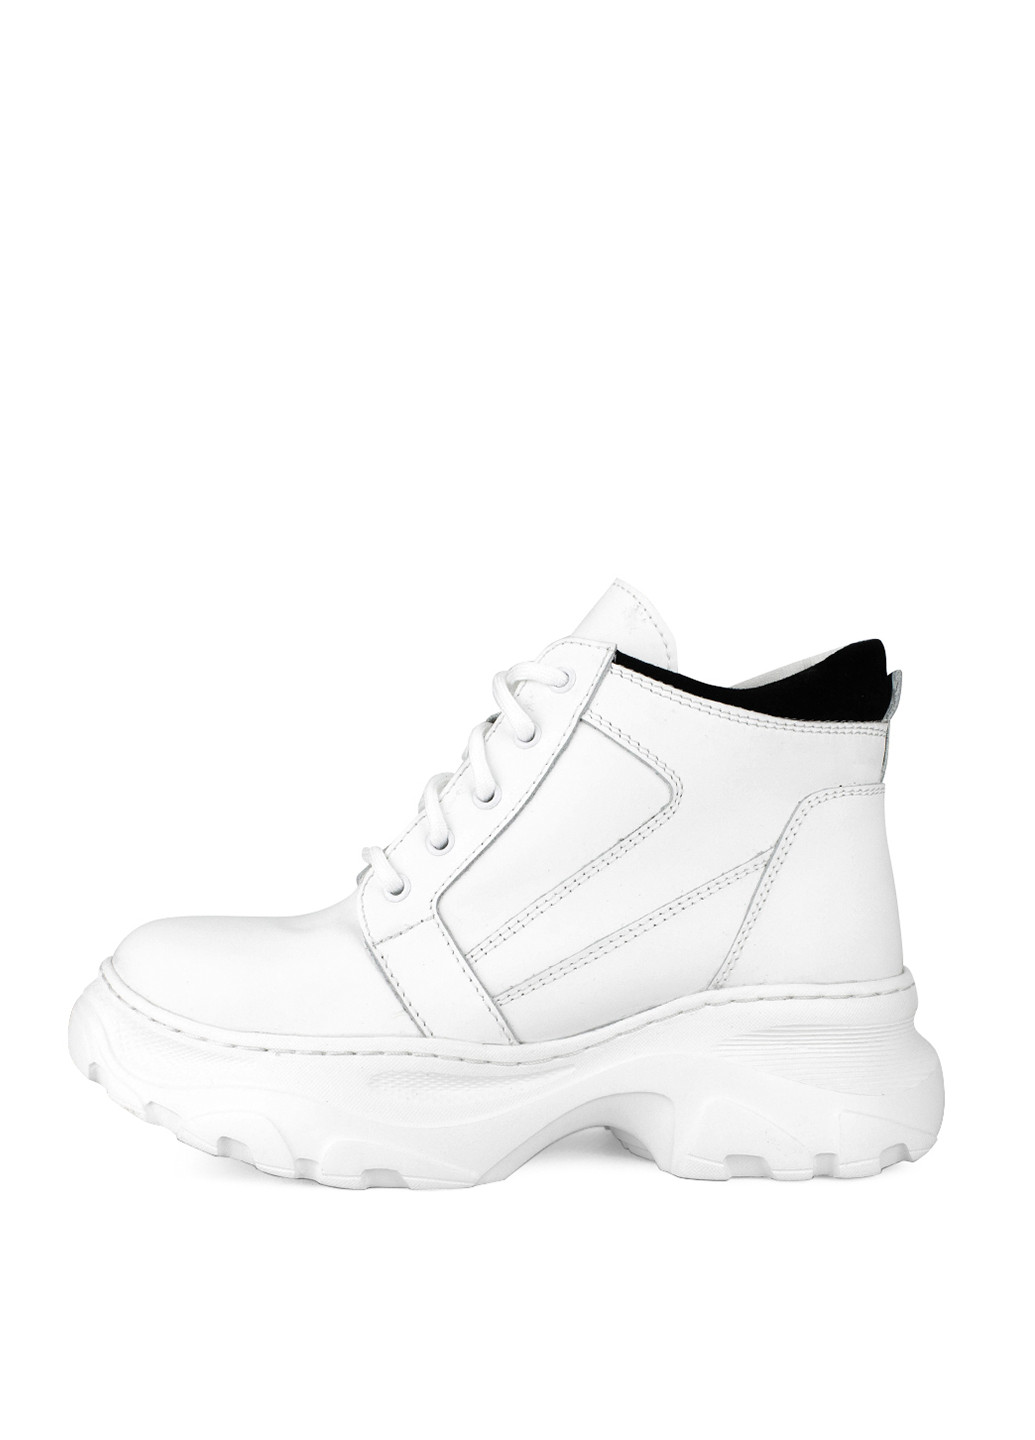 Зимние ботинки Libero с белой подошвой